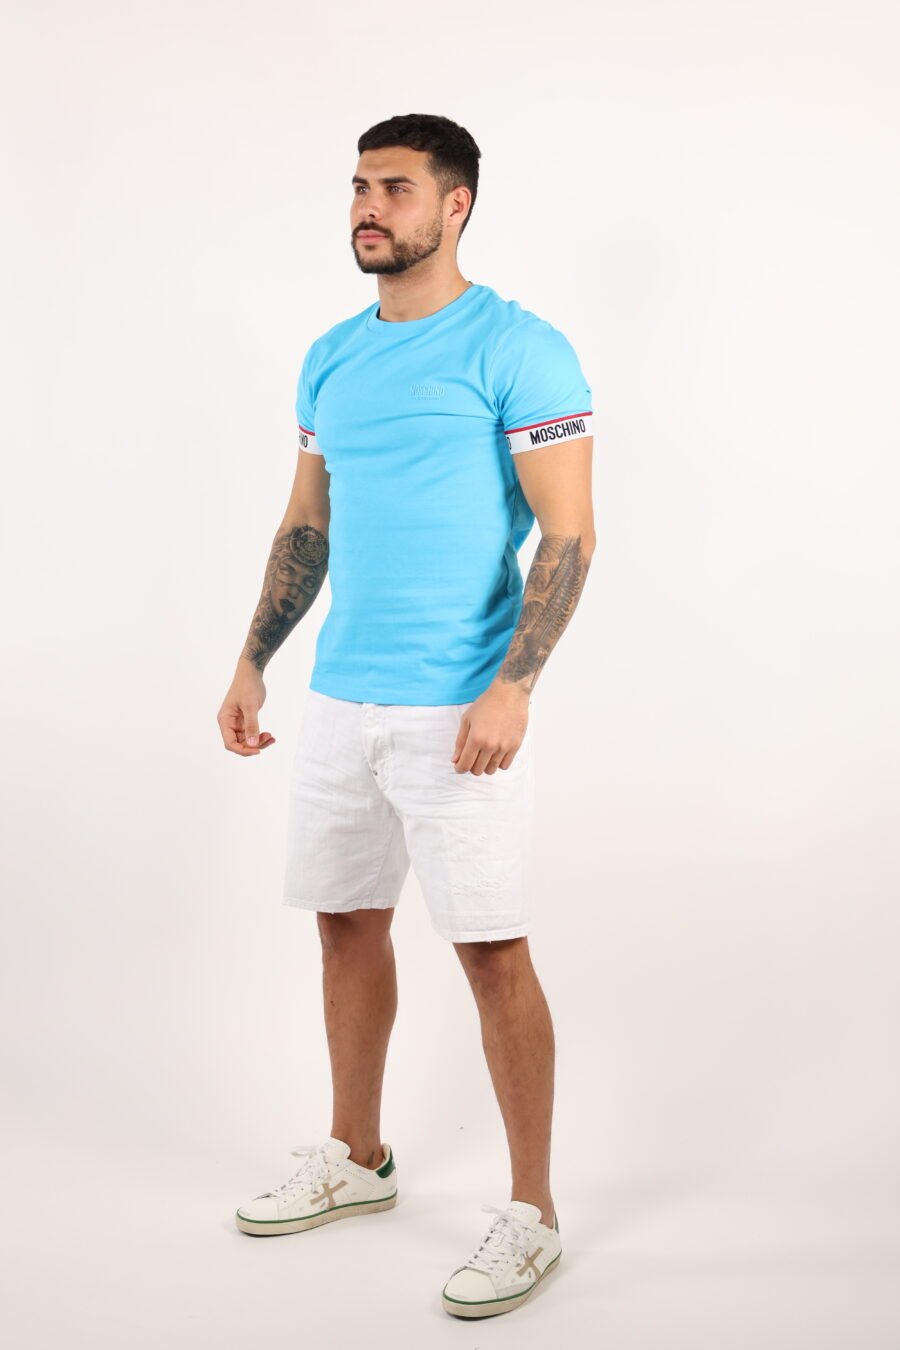 Camiseta azul claro con logo blanco en mangas - 109269